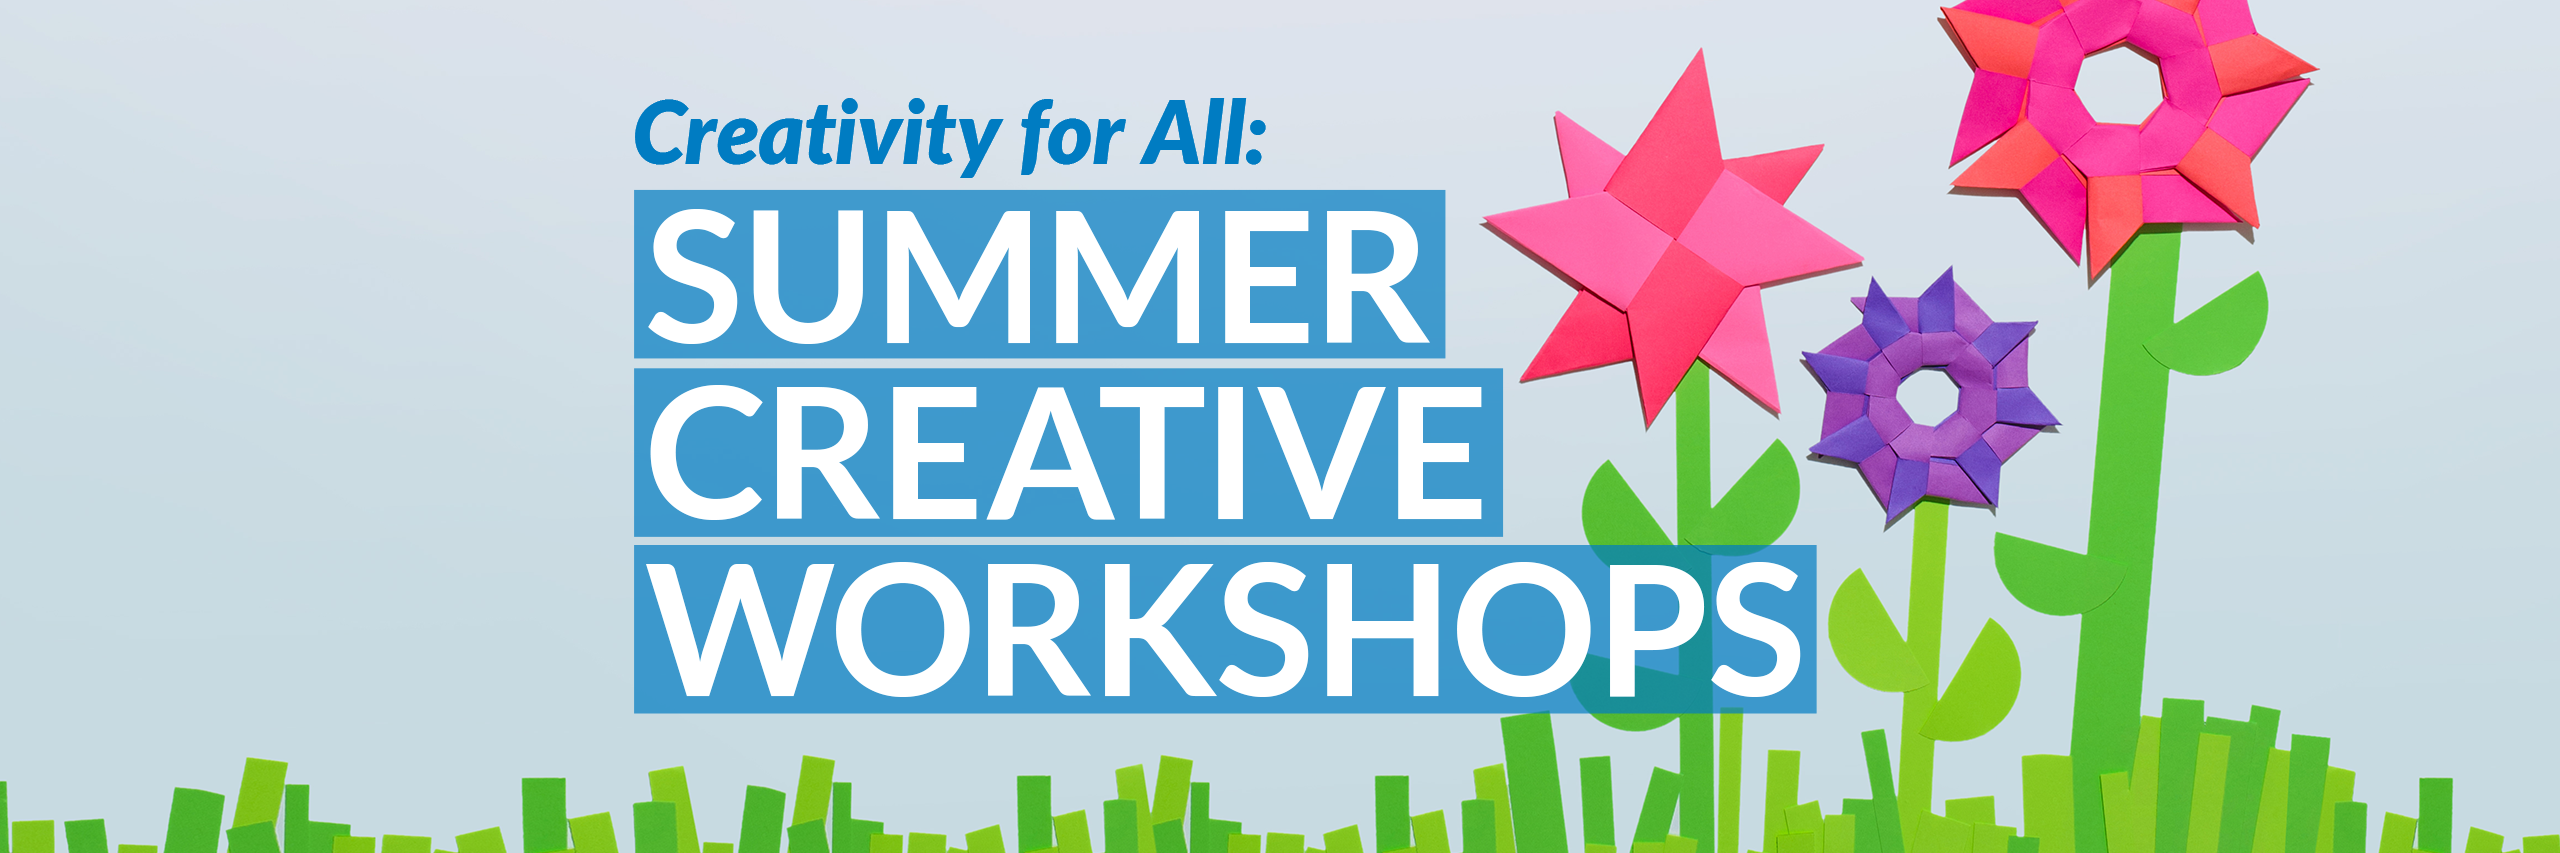 summer workshops header image